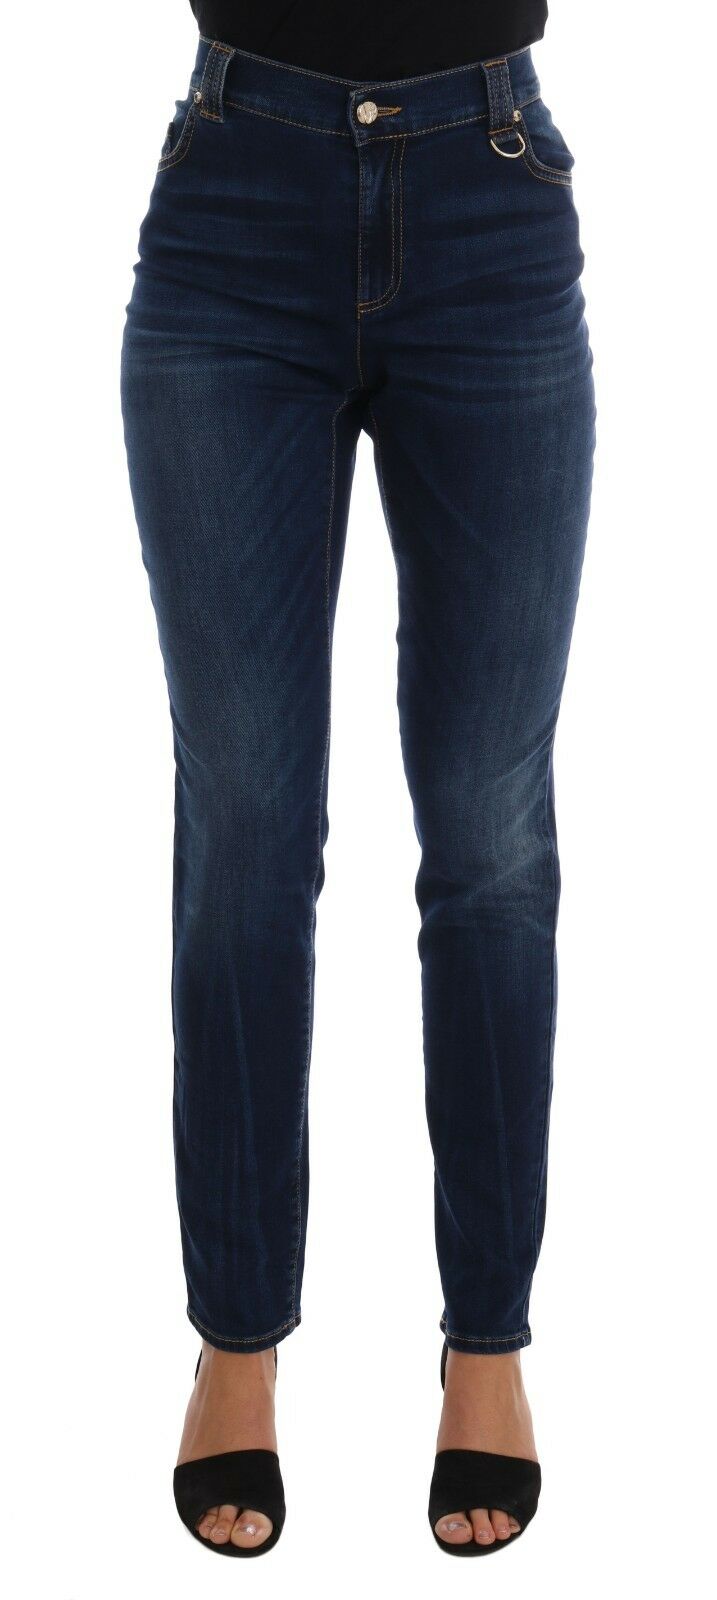 Versace Jeans Blue Wash Cotton Stretch Slim Denim Jeans Pant - Fizigo